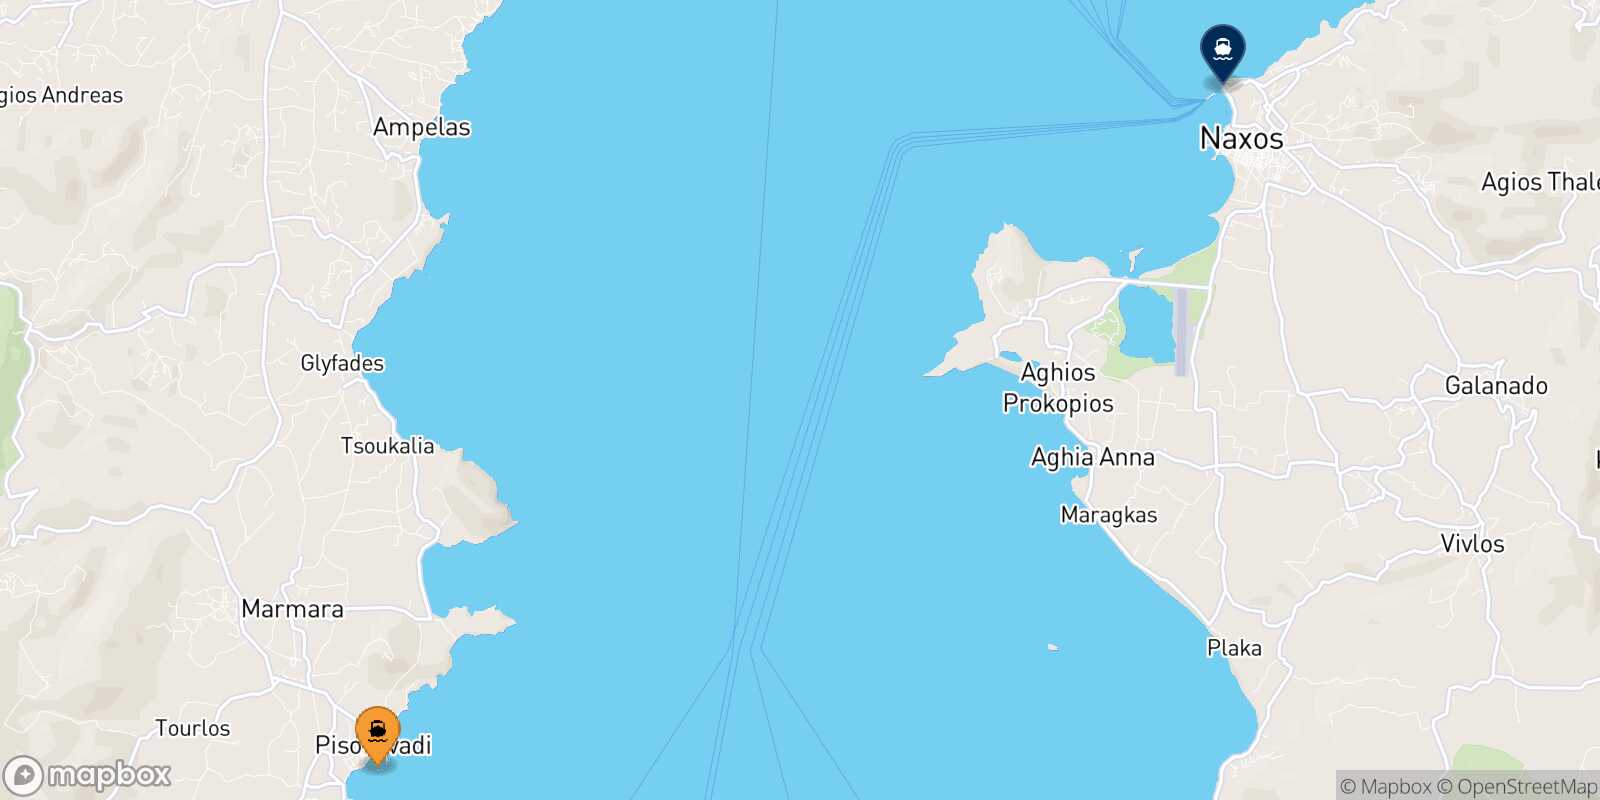 Mappa delle destinazioni raggiungibili da Piso Livadi (Paros)